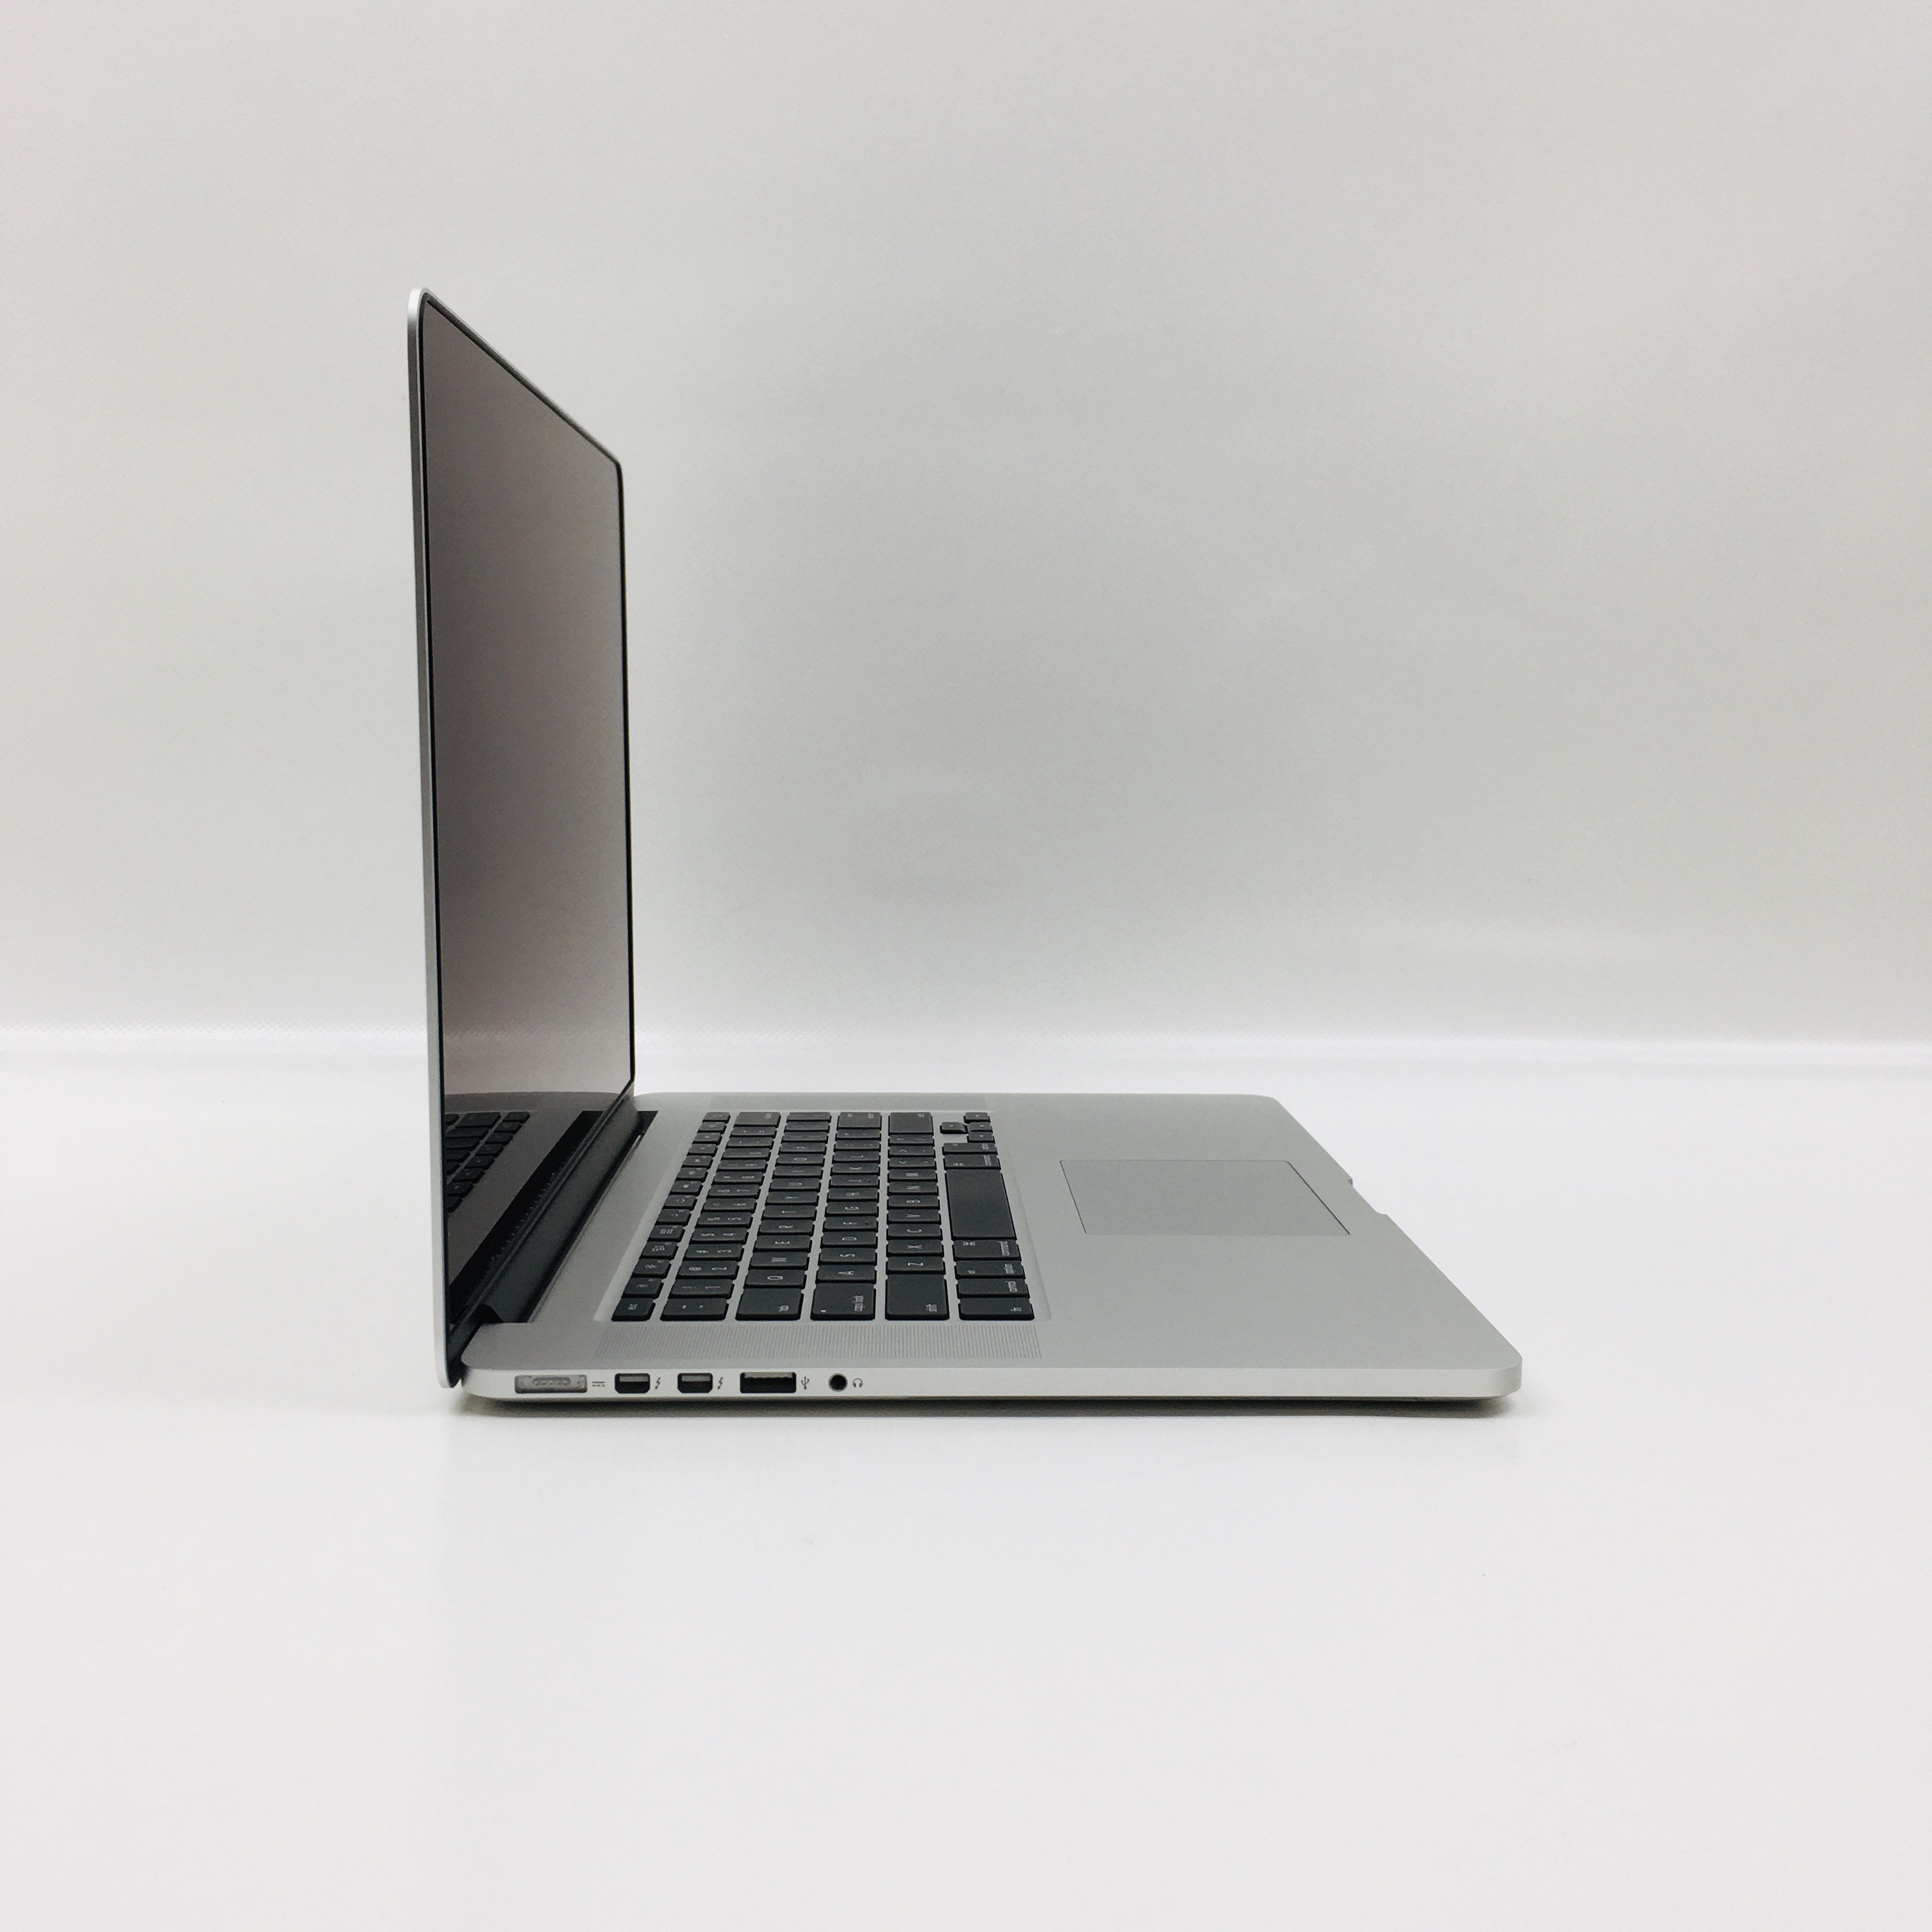 MacBook Pro Retina 15" Mid 2015 (Intel Quad-Core i7 2.2 GHz 16 GB RAM 256 GB SSD), Intel Quad-Core i7 2.2 GHz, 16 GB RAM, 256 GB SSD, image 3